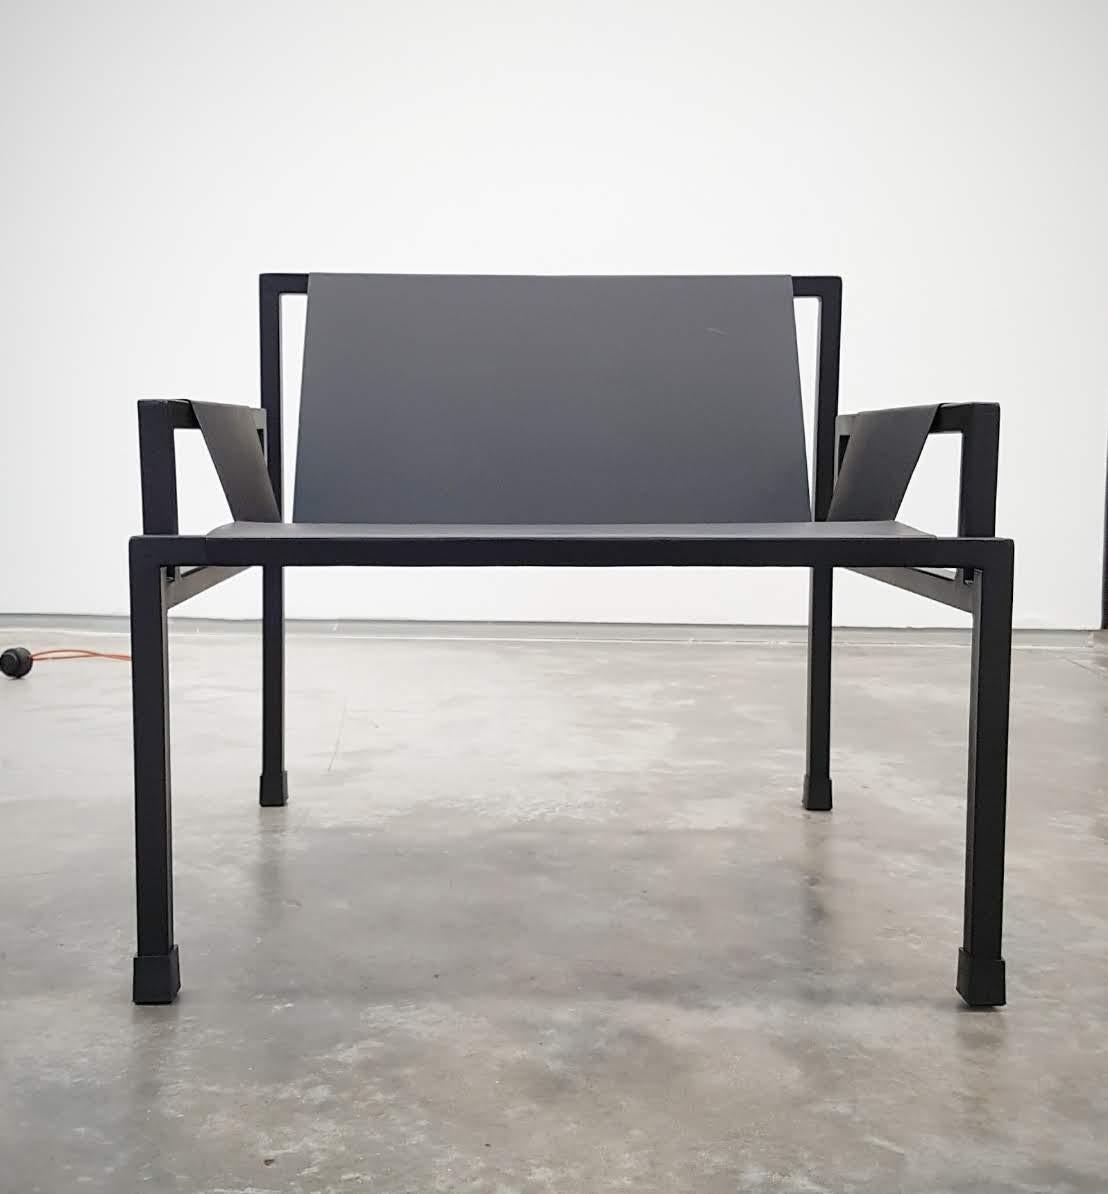 Le fauteuil SLAB ARMCHAIR est un meuble remarquable qui incarne la simplicité et la fonctionnalité. Il est né d'un concept simple qui a été exécuté de manière experte pour créer un fauteuil minimaliste mais très ergonomique. L'accent mis sur